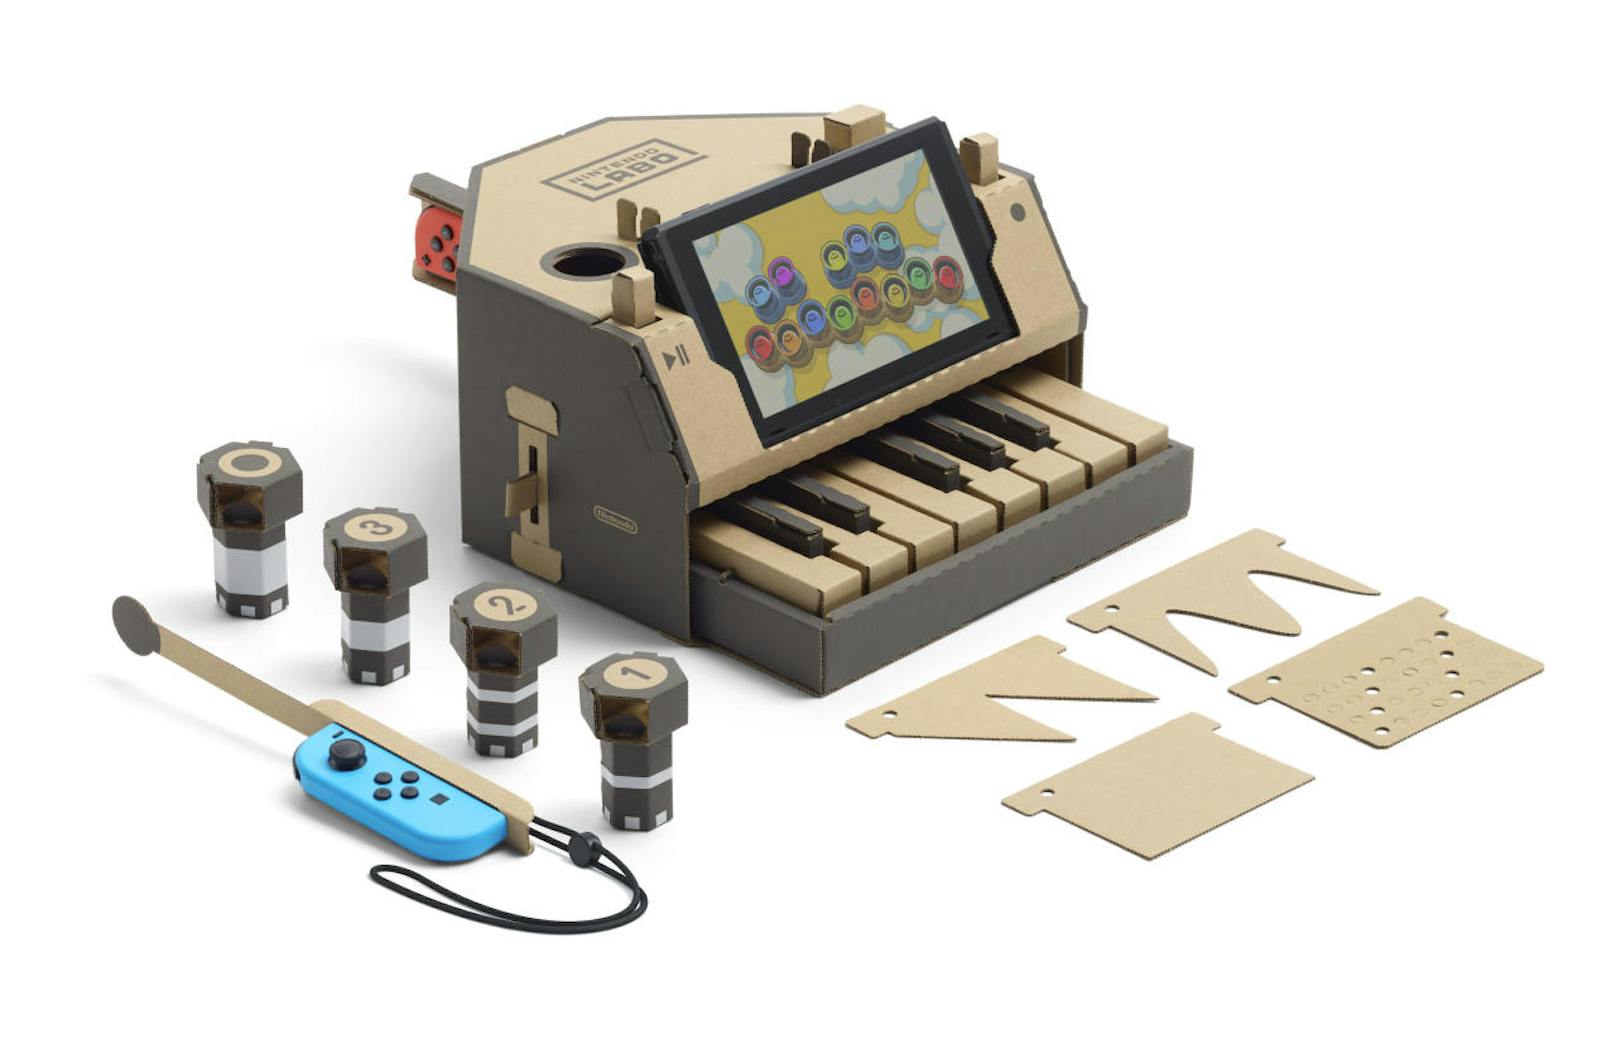 Nintendo Labo animiert aktiv zur Kreation eigener Toy-Con. Zu diesem Zweck gibt es den Werkstatt-Modus. Dieser lässt Kinder und andere kreative Geister mithilfe einfacher Programmierlogiken neue Toy-Con erschaffen.